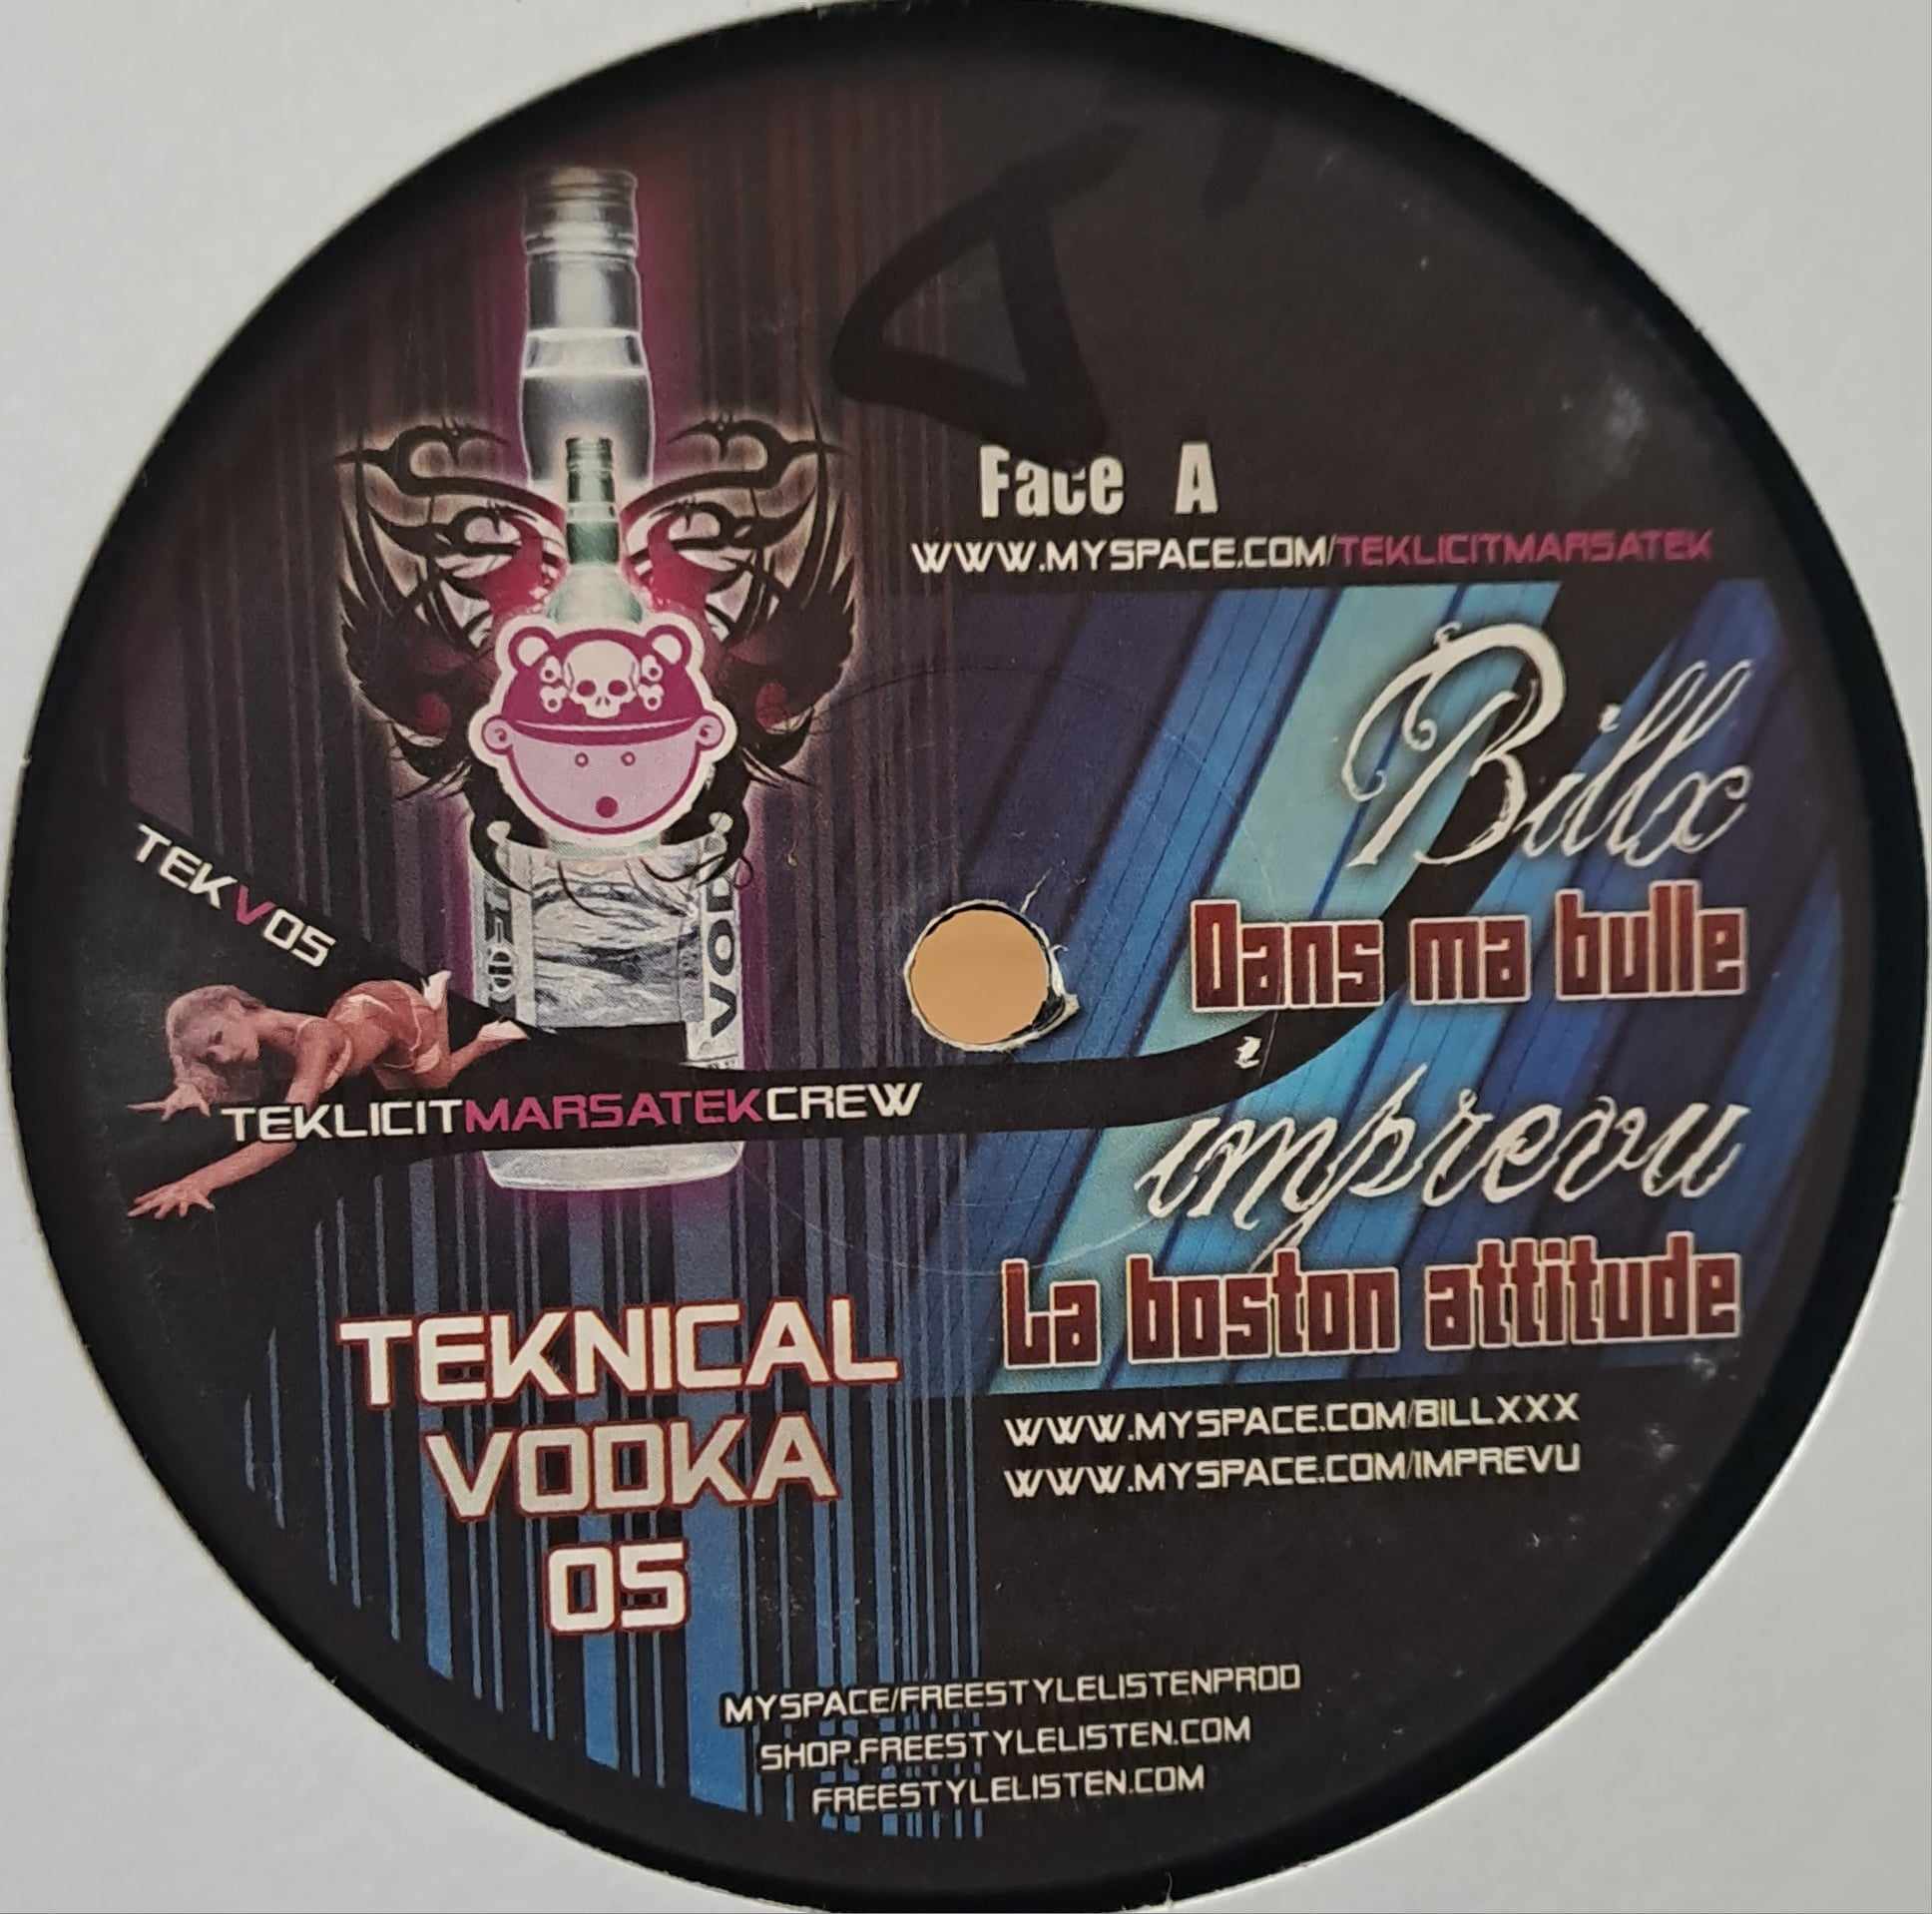 Teknical Vodka 05 - vinyle freetekno